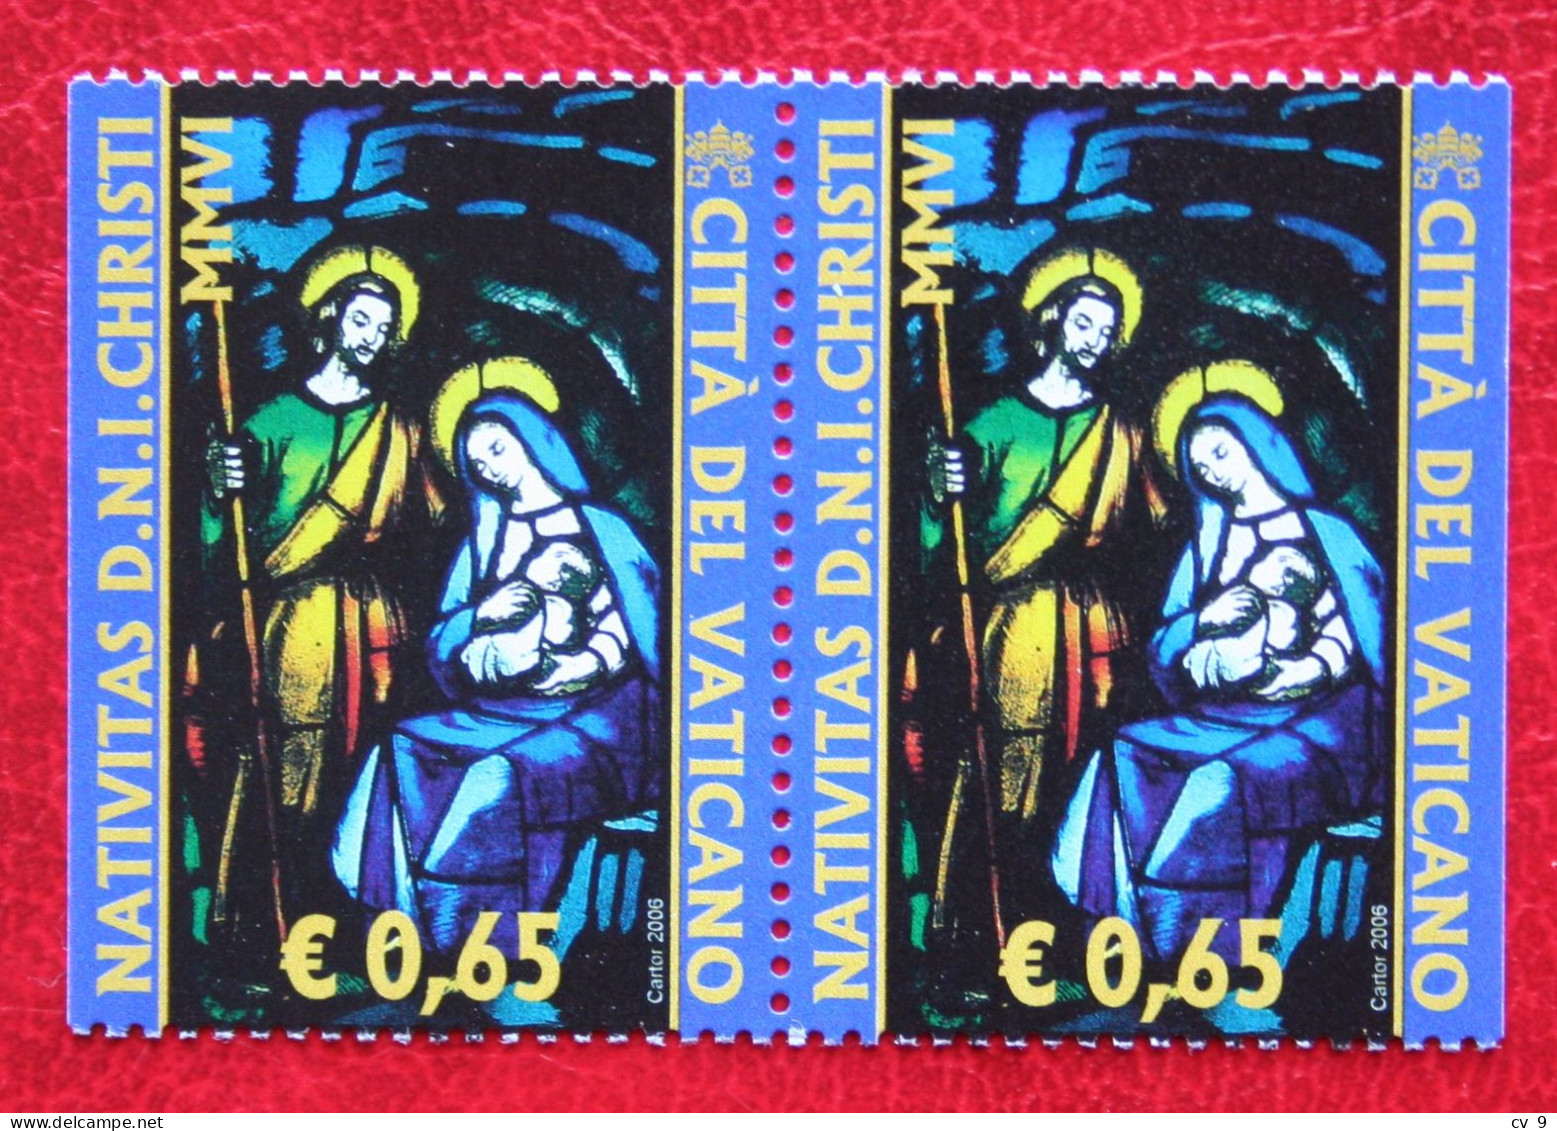 Natale Weihnachten Xmas Noel Kerst Booklet Stamps 2006 Mi 1567 Dl Dr Yv - POSTFRIS / MNH / **  VATICANO VATICAN VATICAAN - Neufs